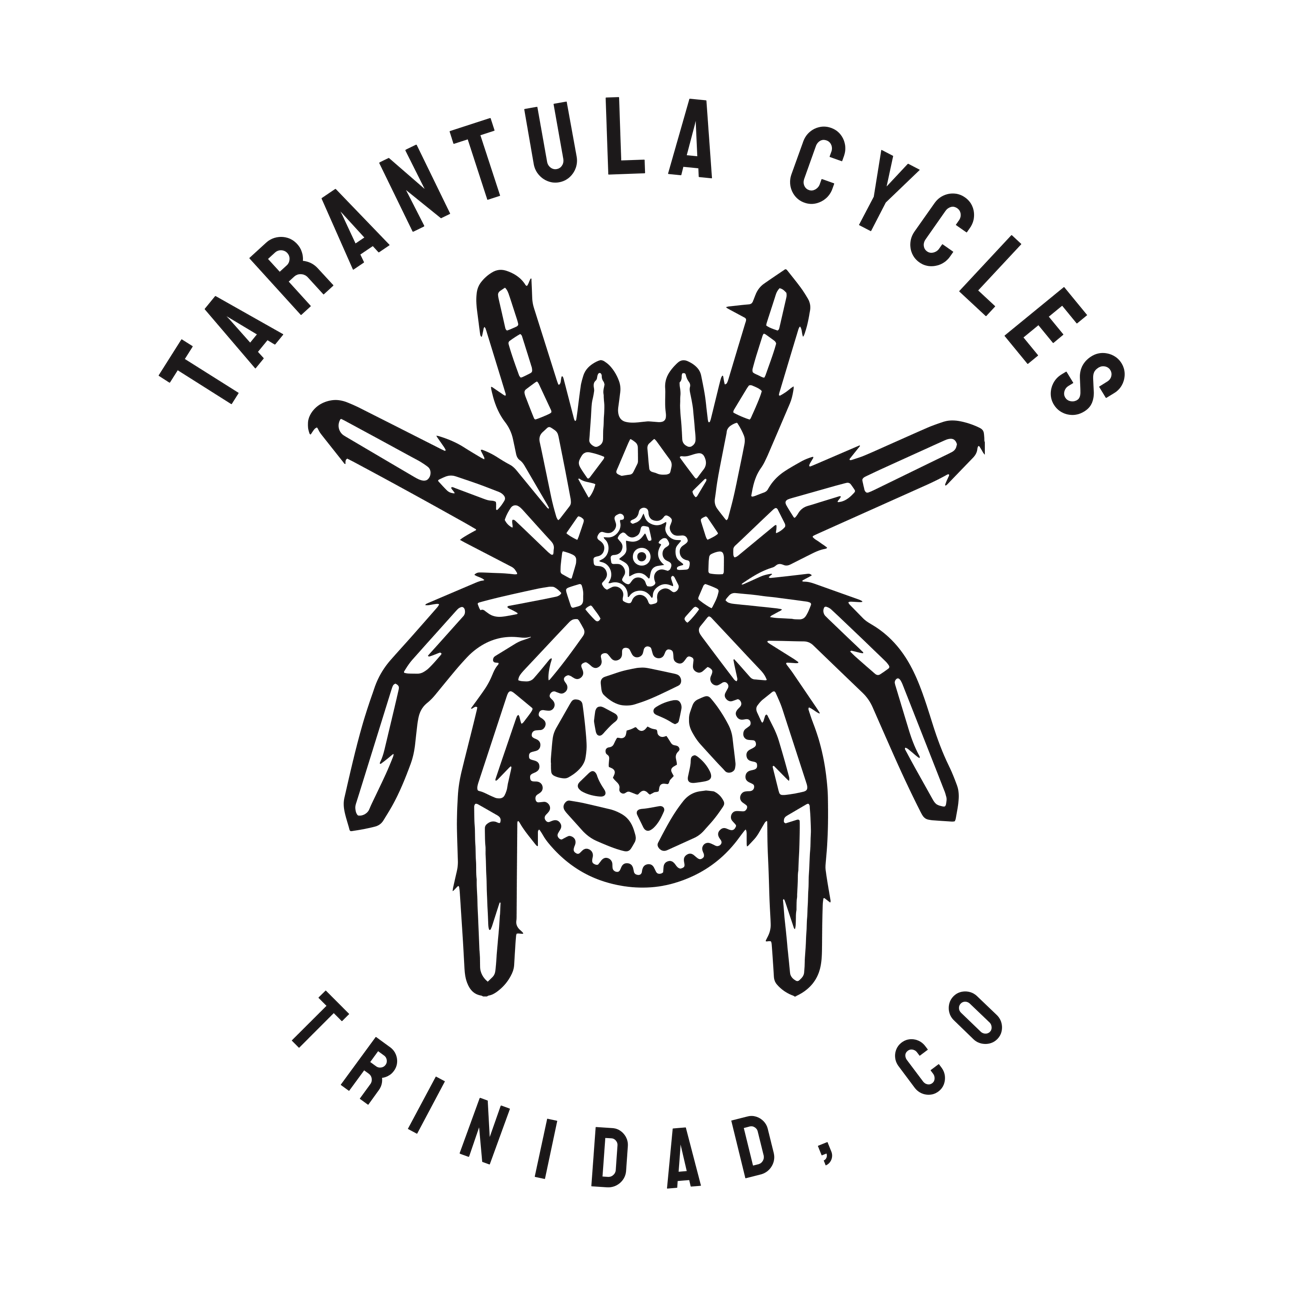 Tarantula Cycles